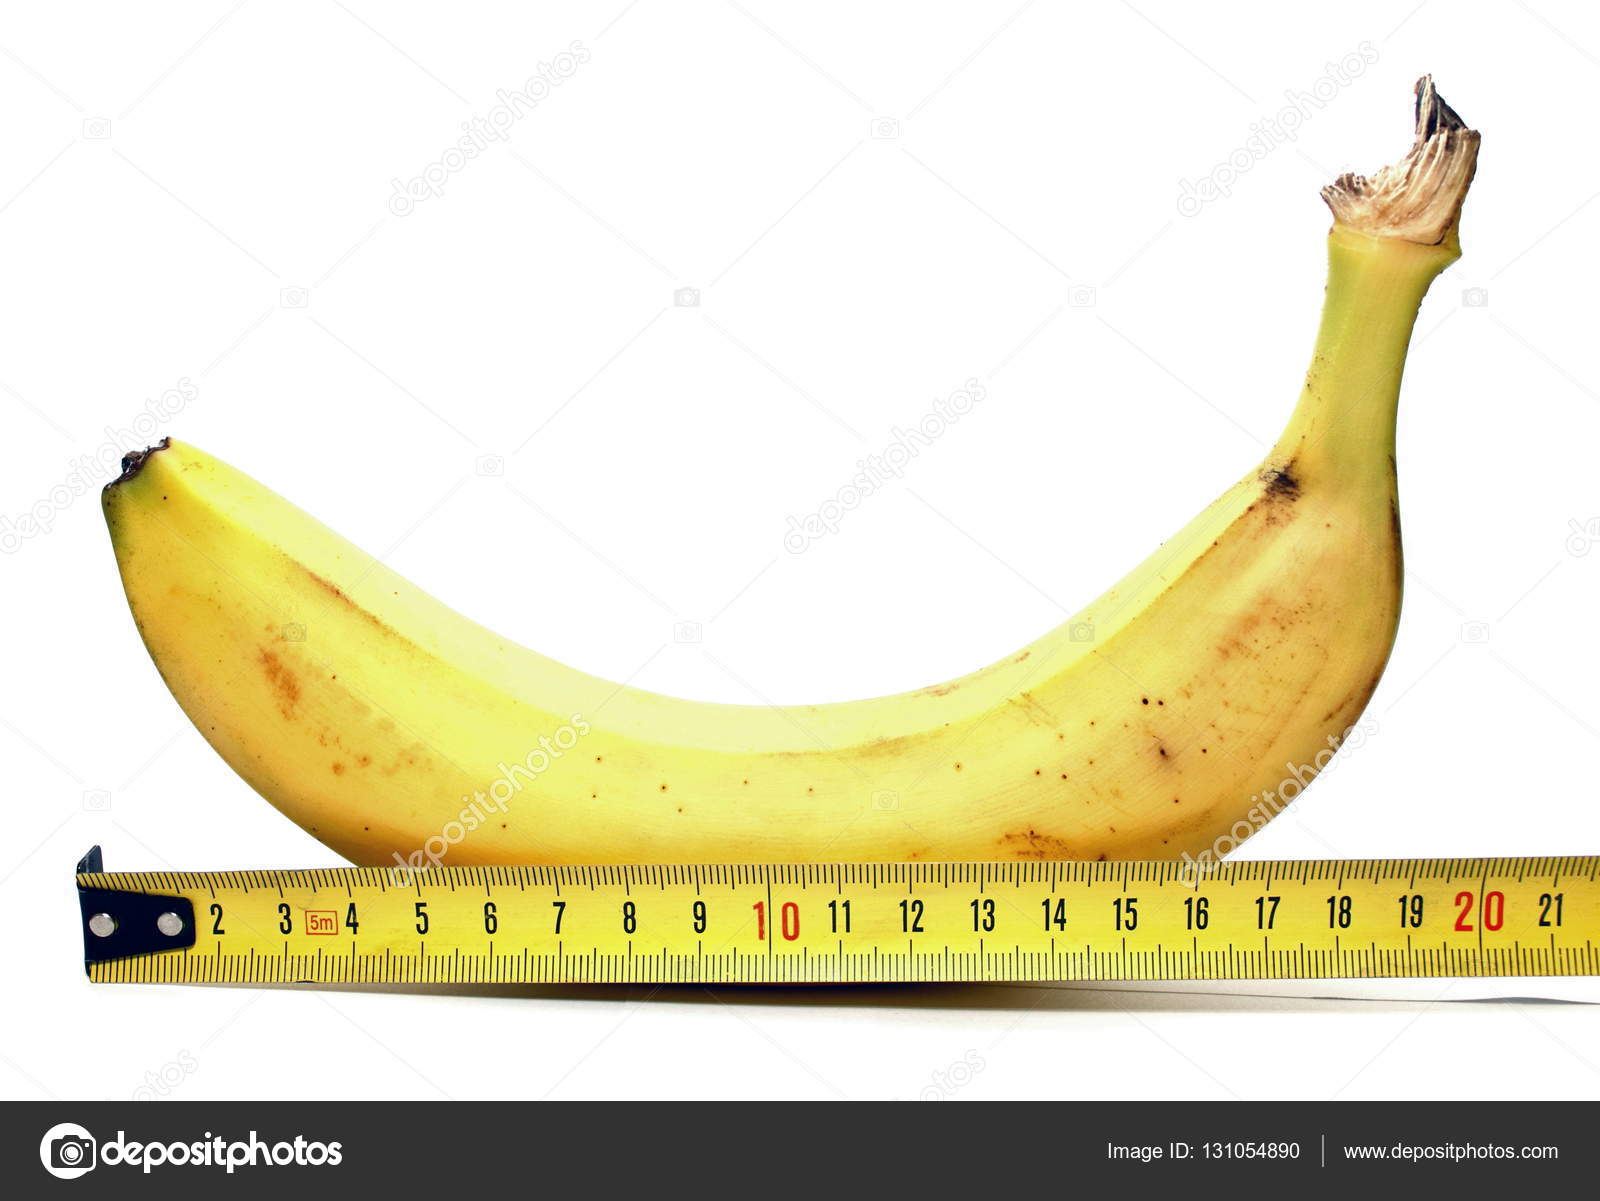 [Jeu] Association d'images - Page 14 Depositphotos_131054890-stock-photo-large-banana-and-measuring-tape